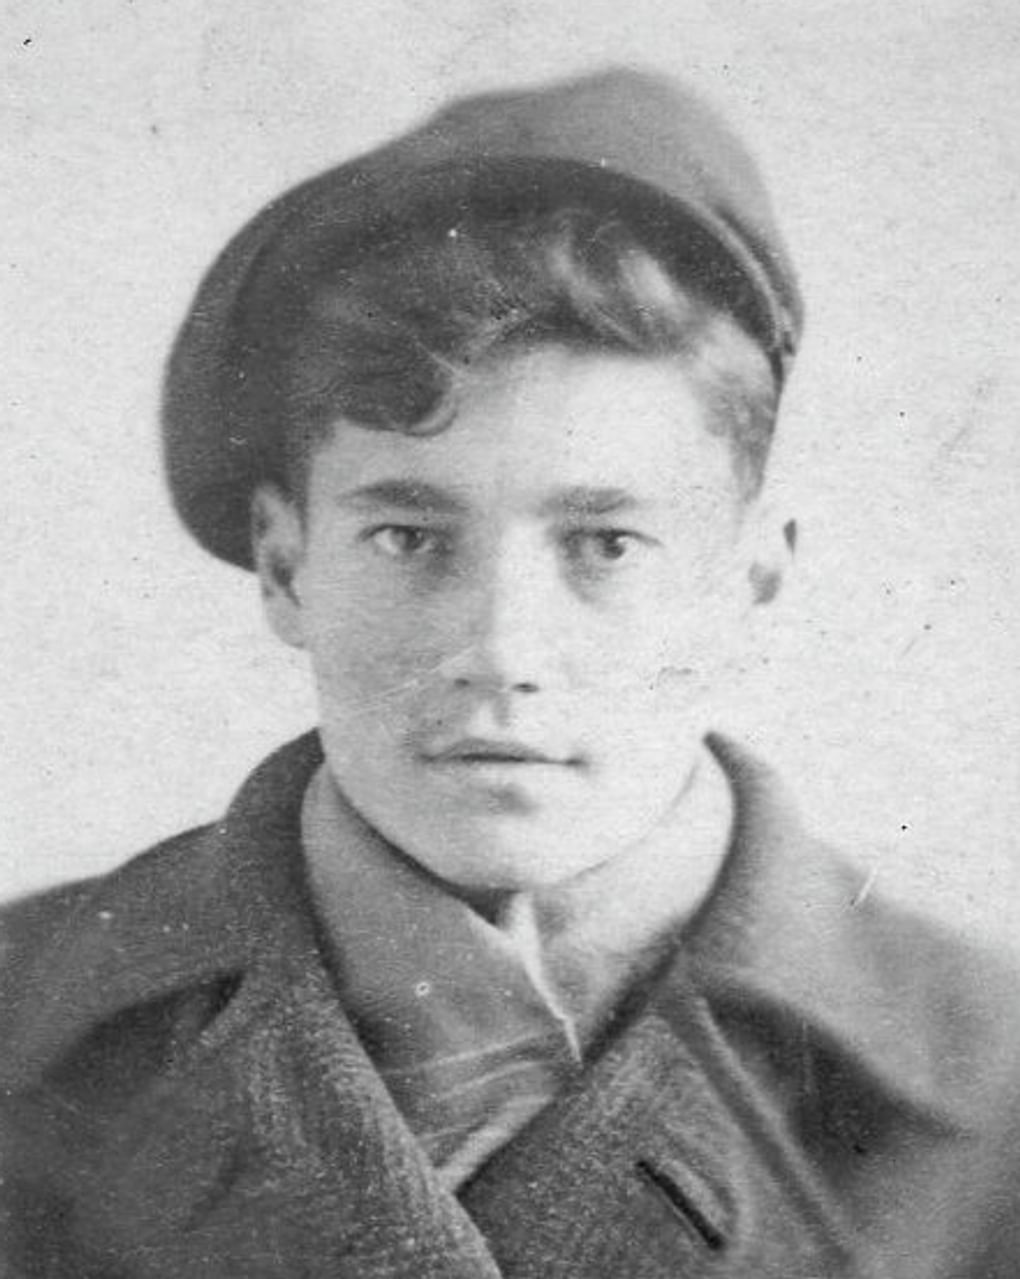 Эльдар Рязанов в детстве. 1943 год. Фотография: Киноклуб-музей «Эльдар», Москва